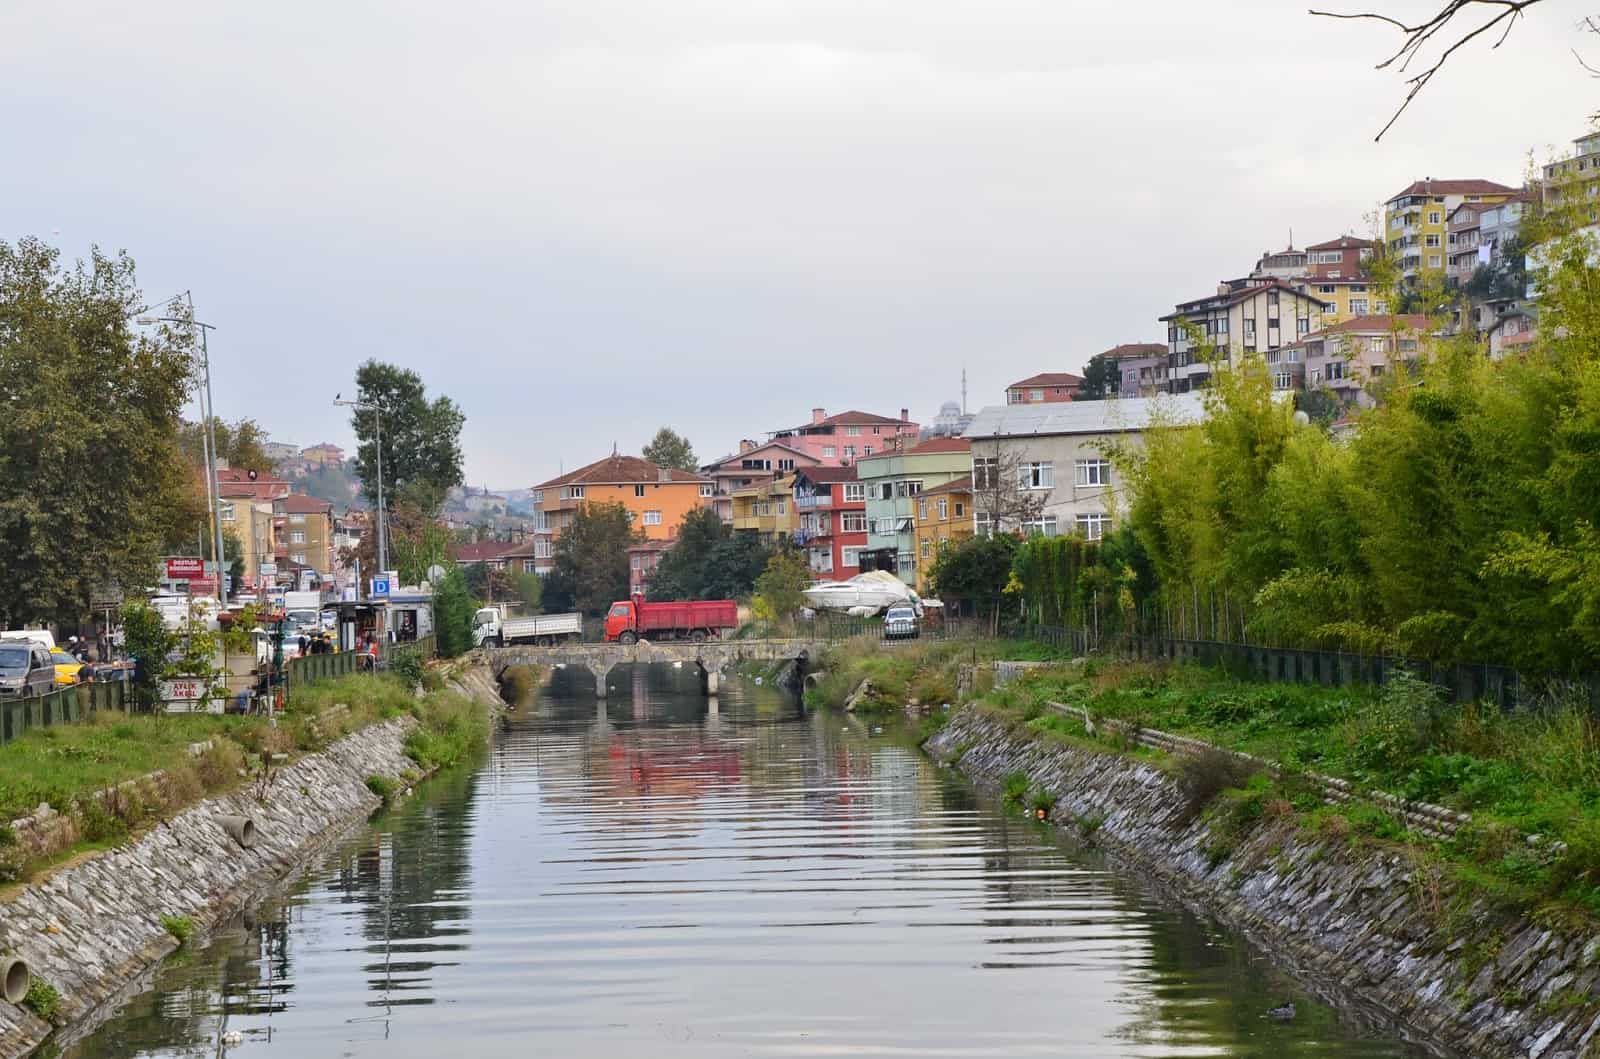 Küçüksu Creek in Istanbul, Turkey